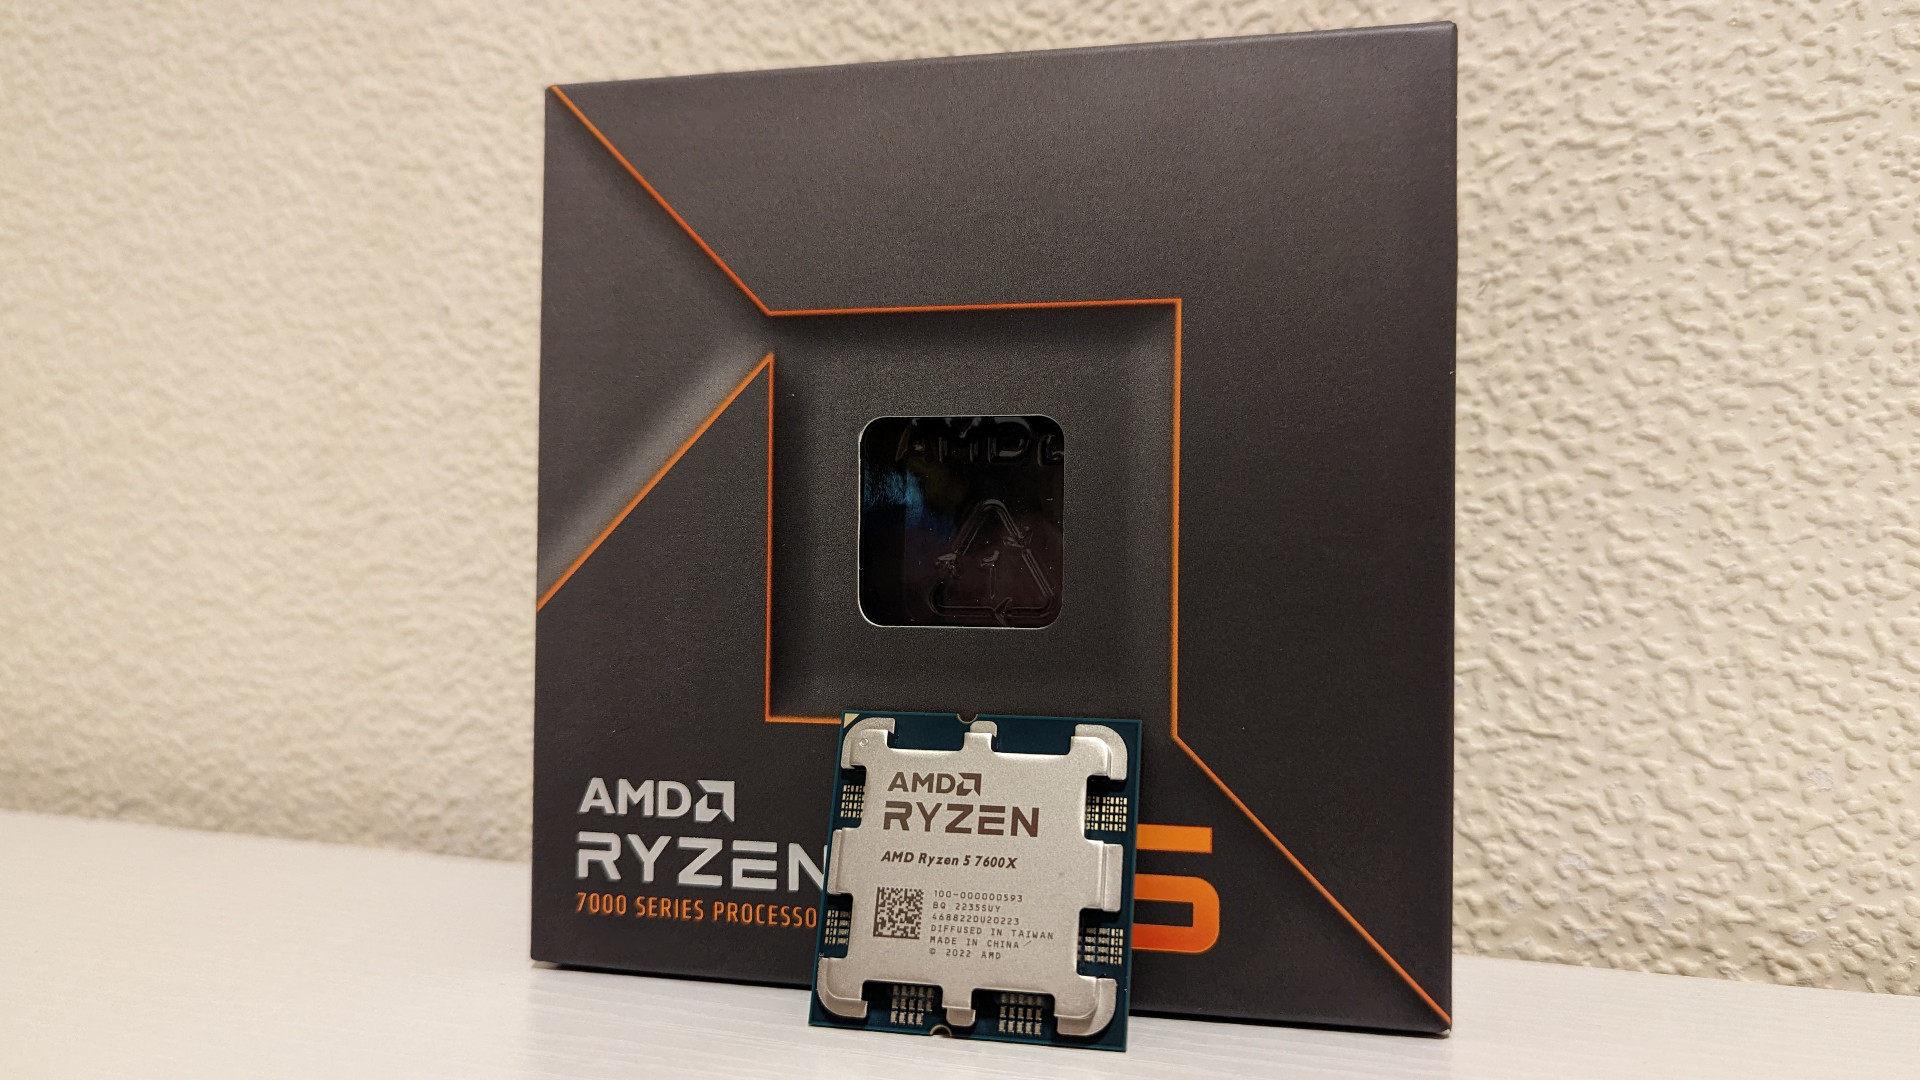 ซีพียูเกม AMD ที่ดีที่สุดคือ Ryzen 5 7600x